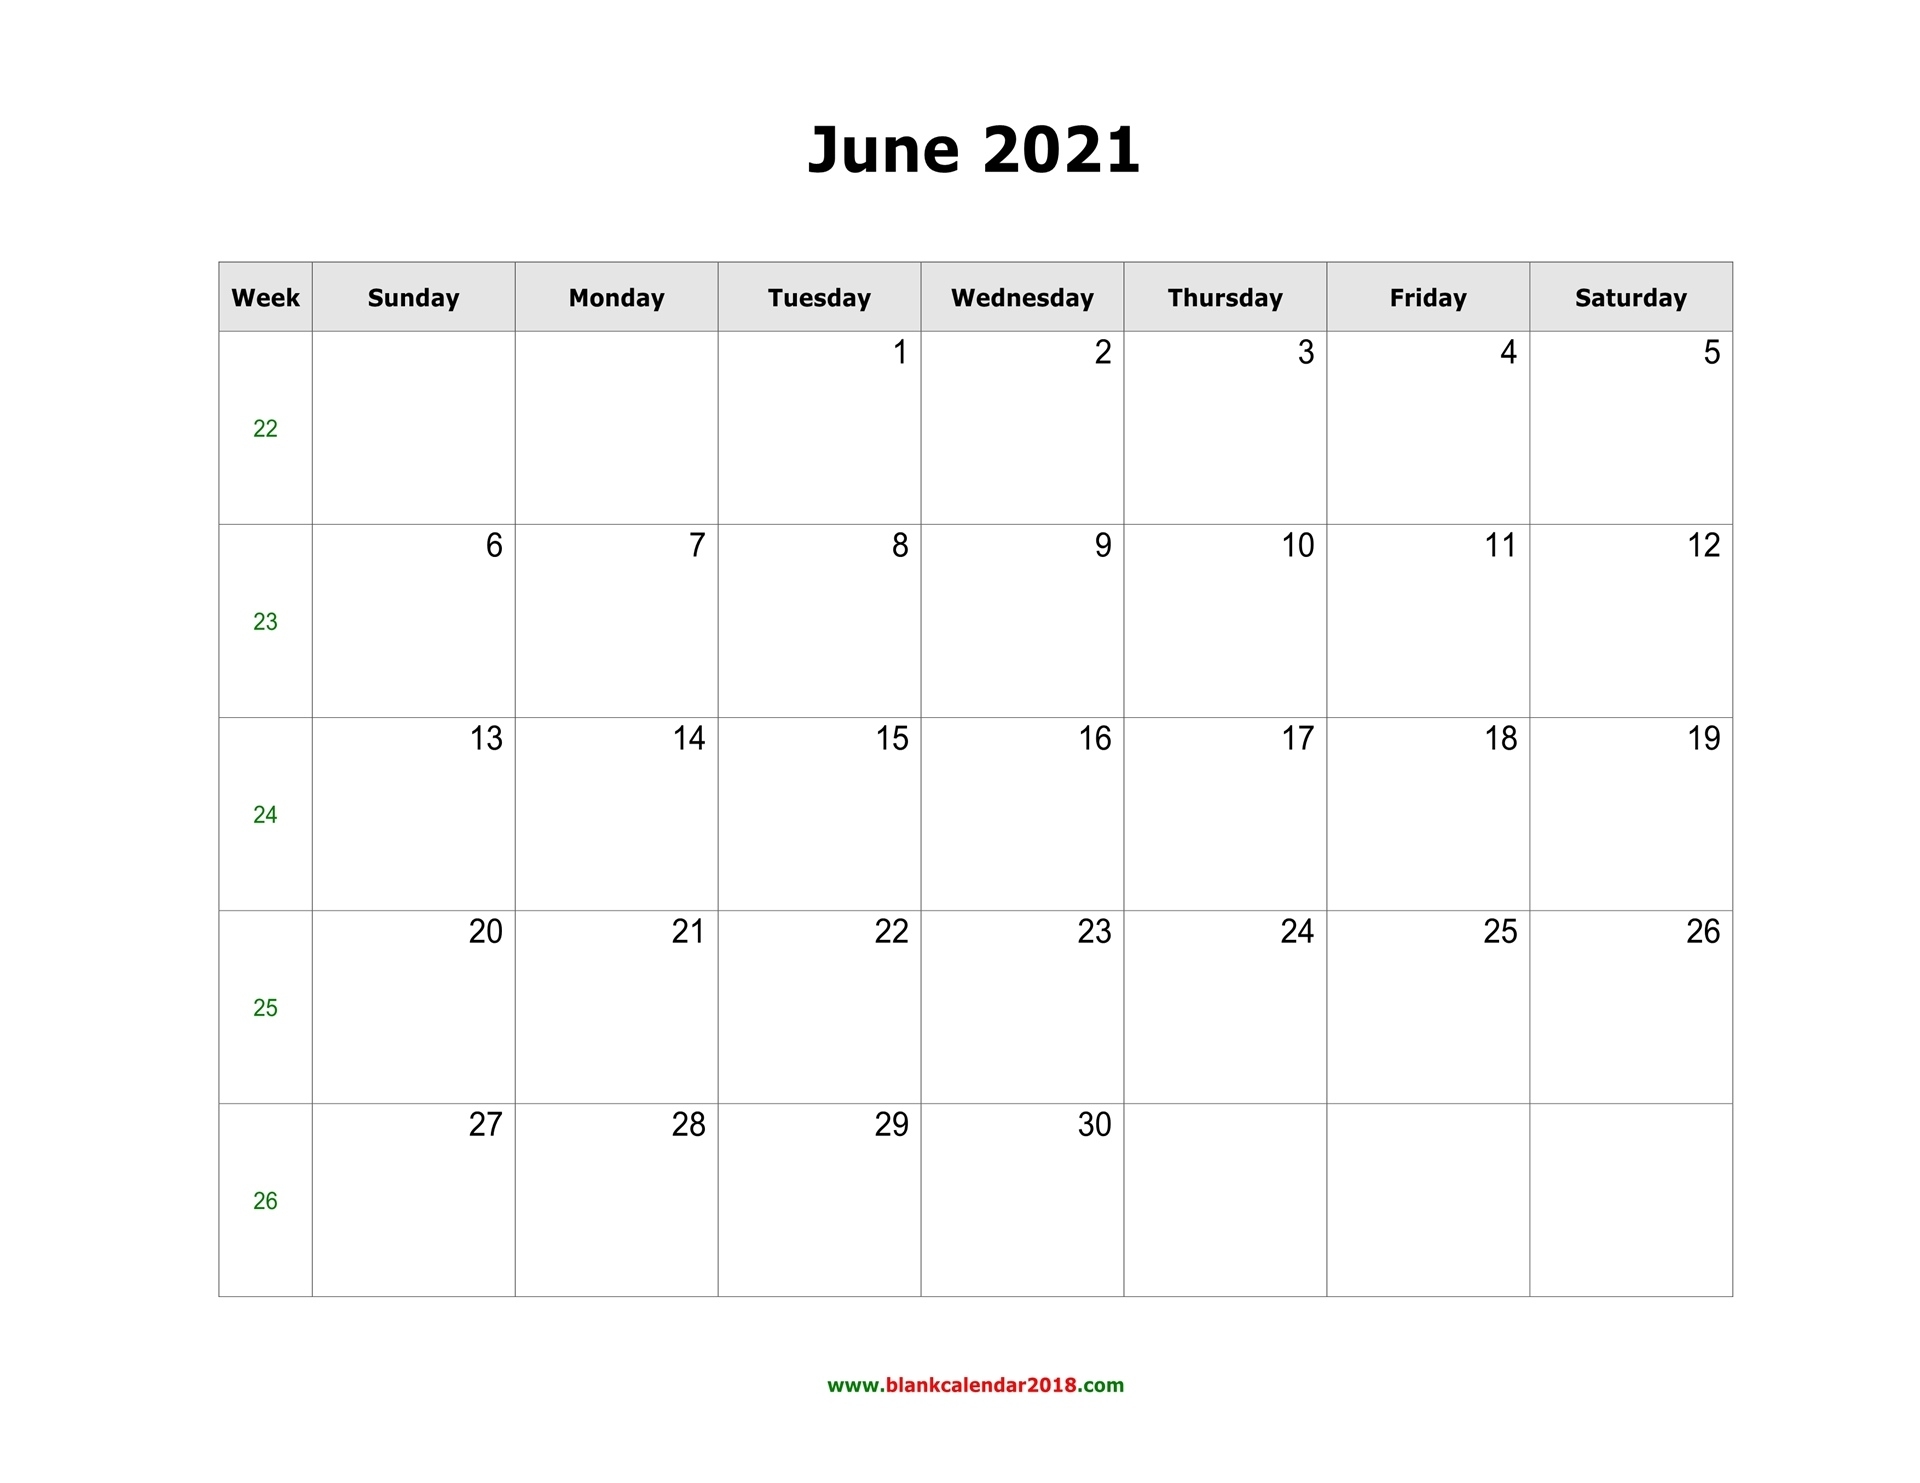 Blank Calendar June 2021 Landscape Calendar From August 2020 To June 2021